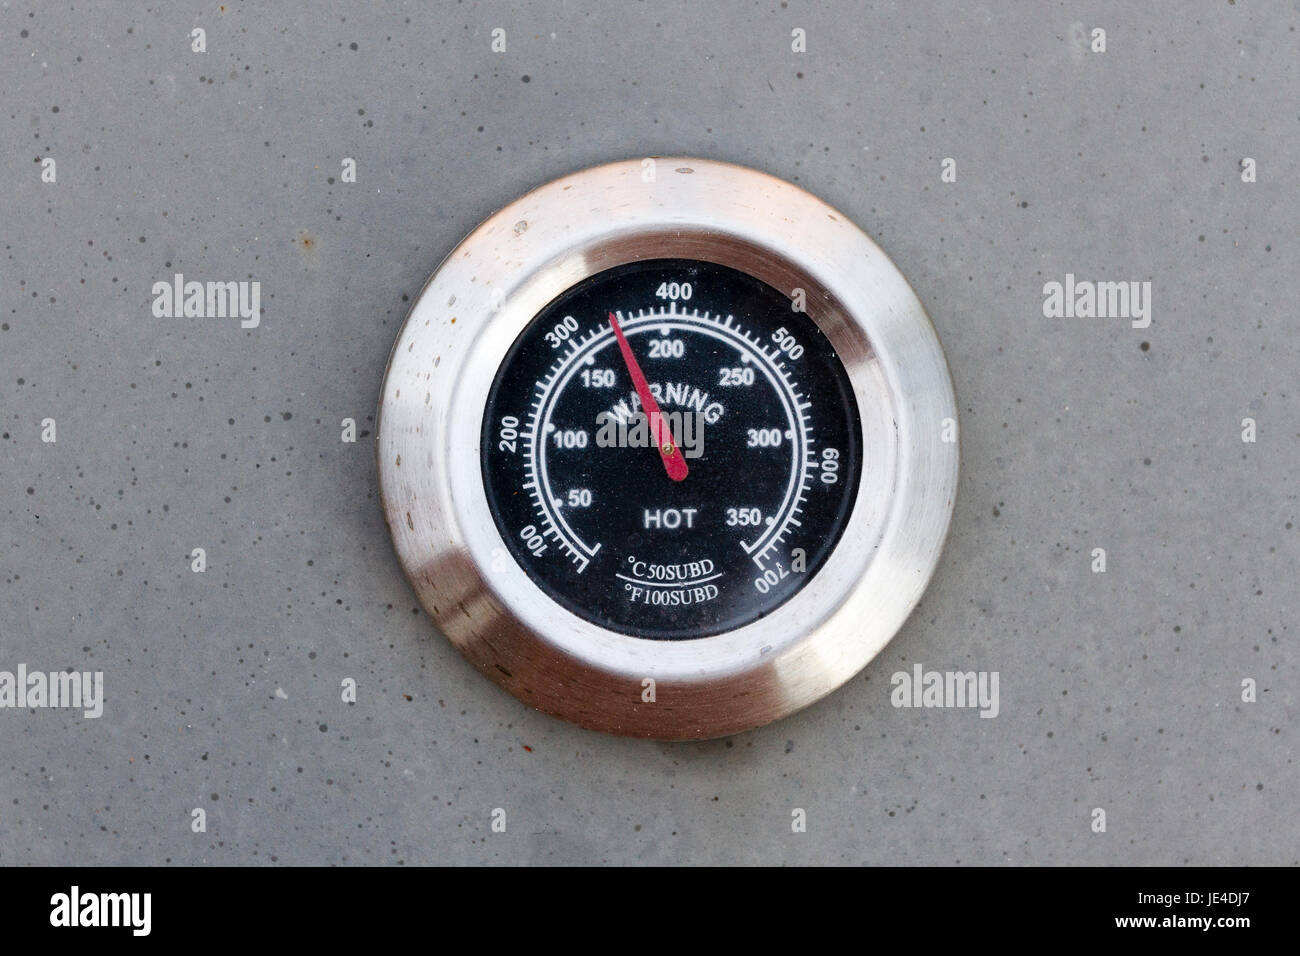 Termómetro para barbacoa que se utilizan para medir temperaturas de cocción correcta Foto de stock